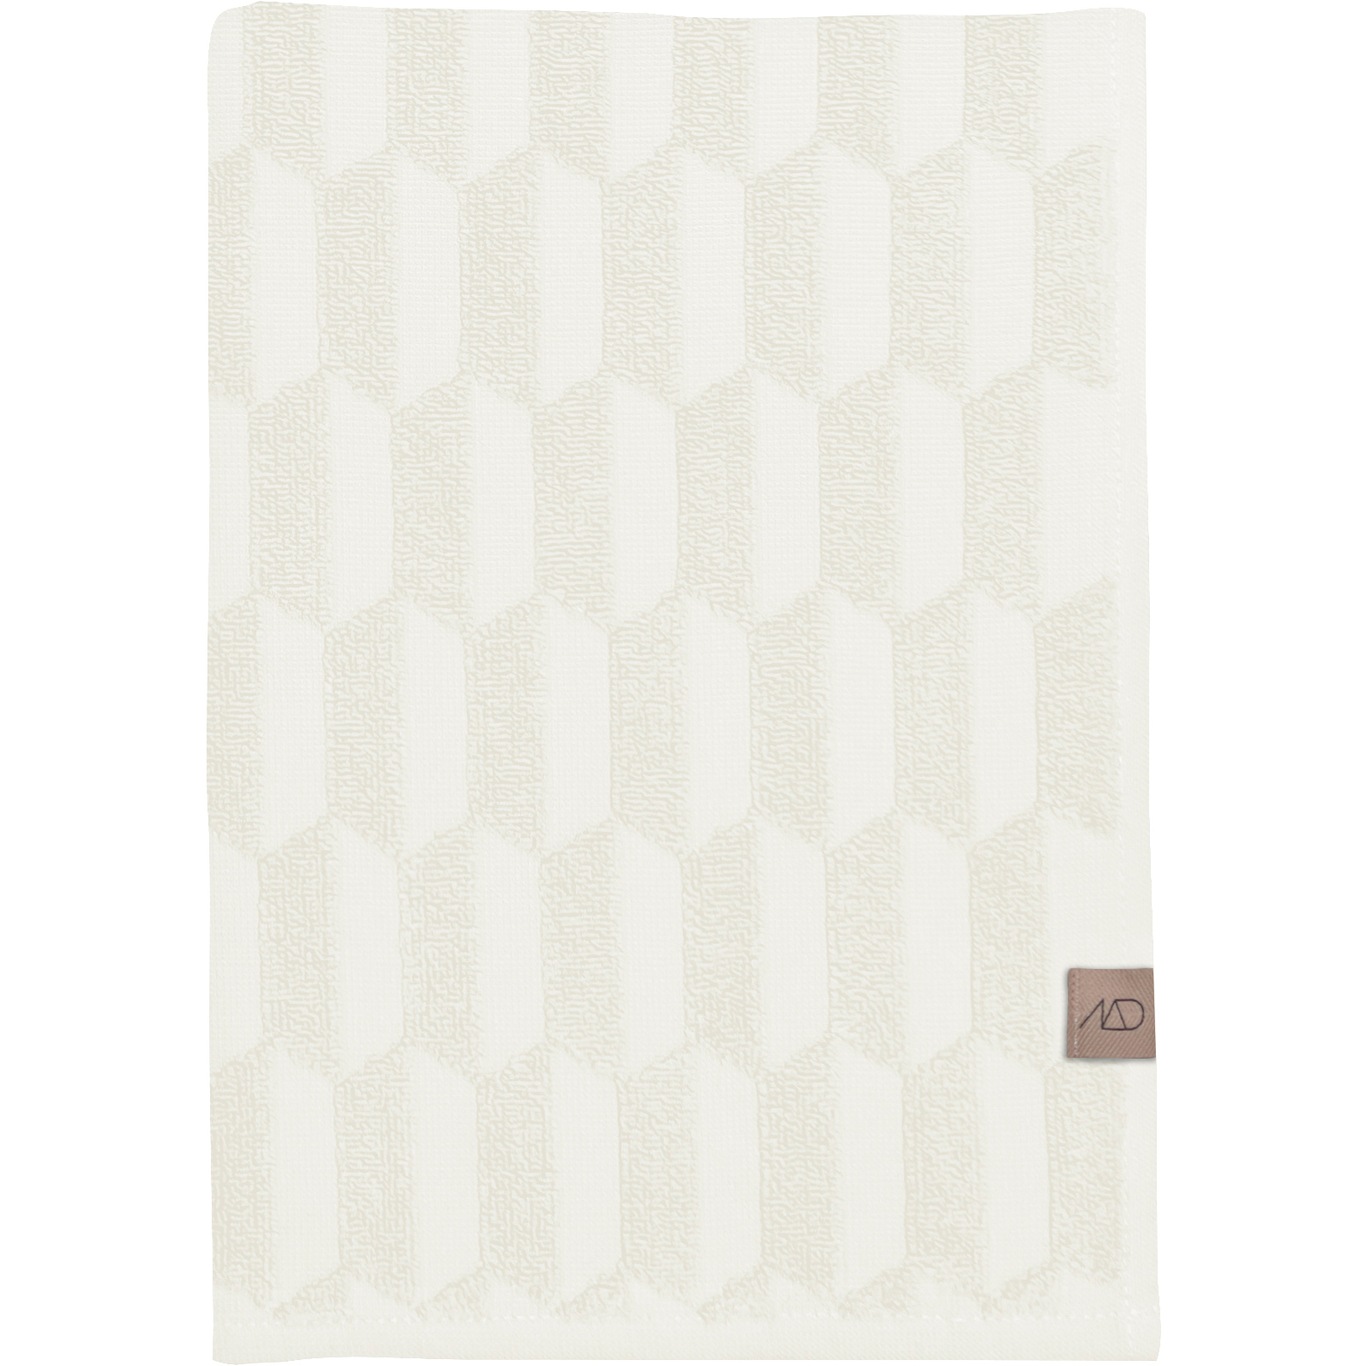 Geo Håndklæde Offwhite 2-pak, 35x55 cm